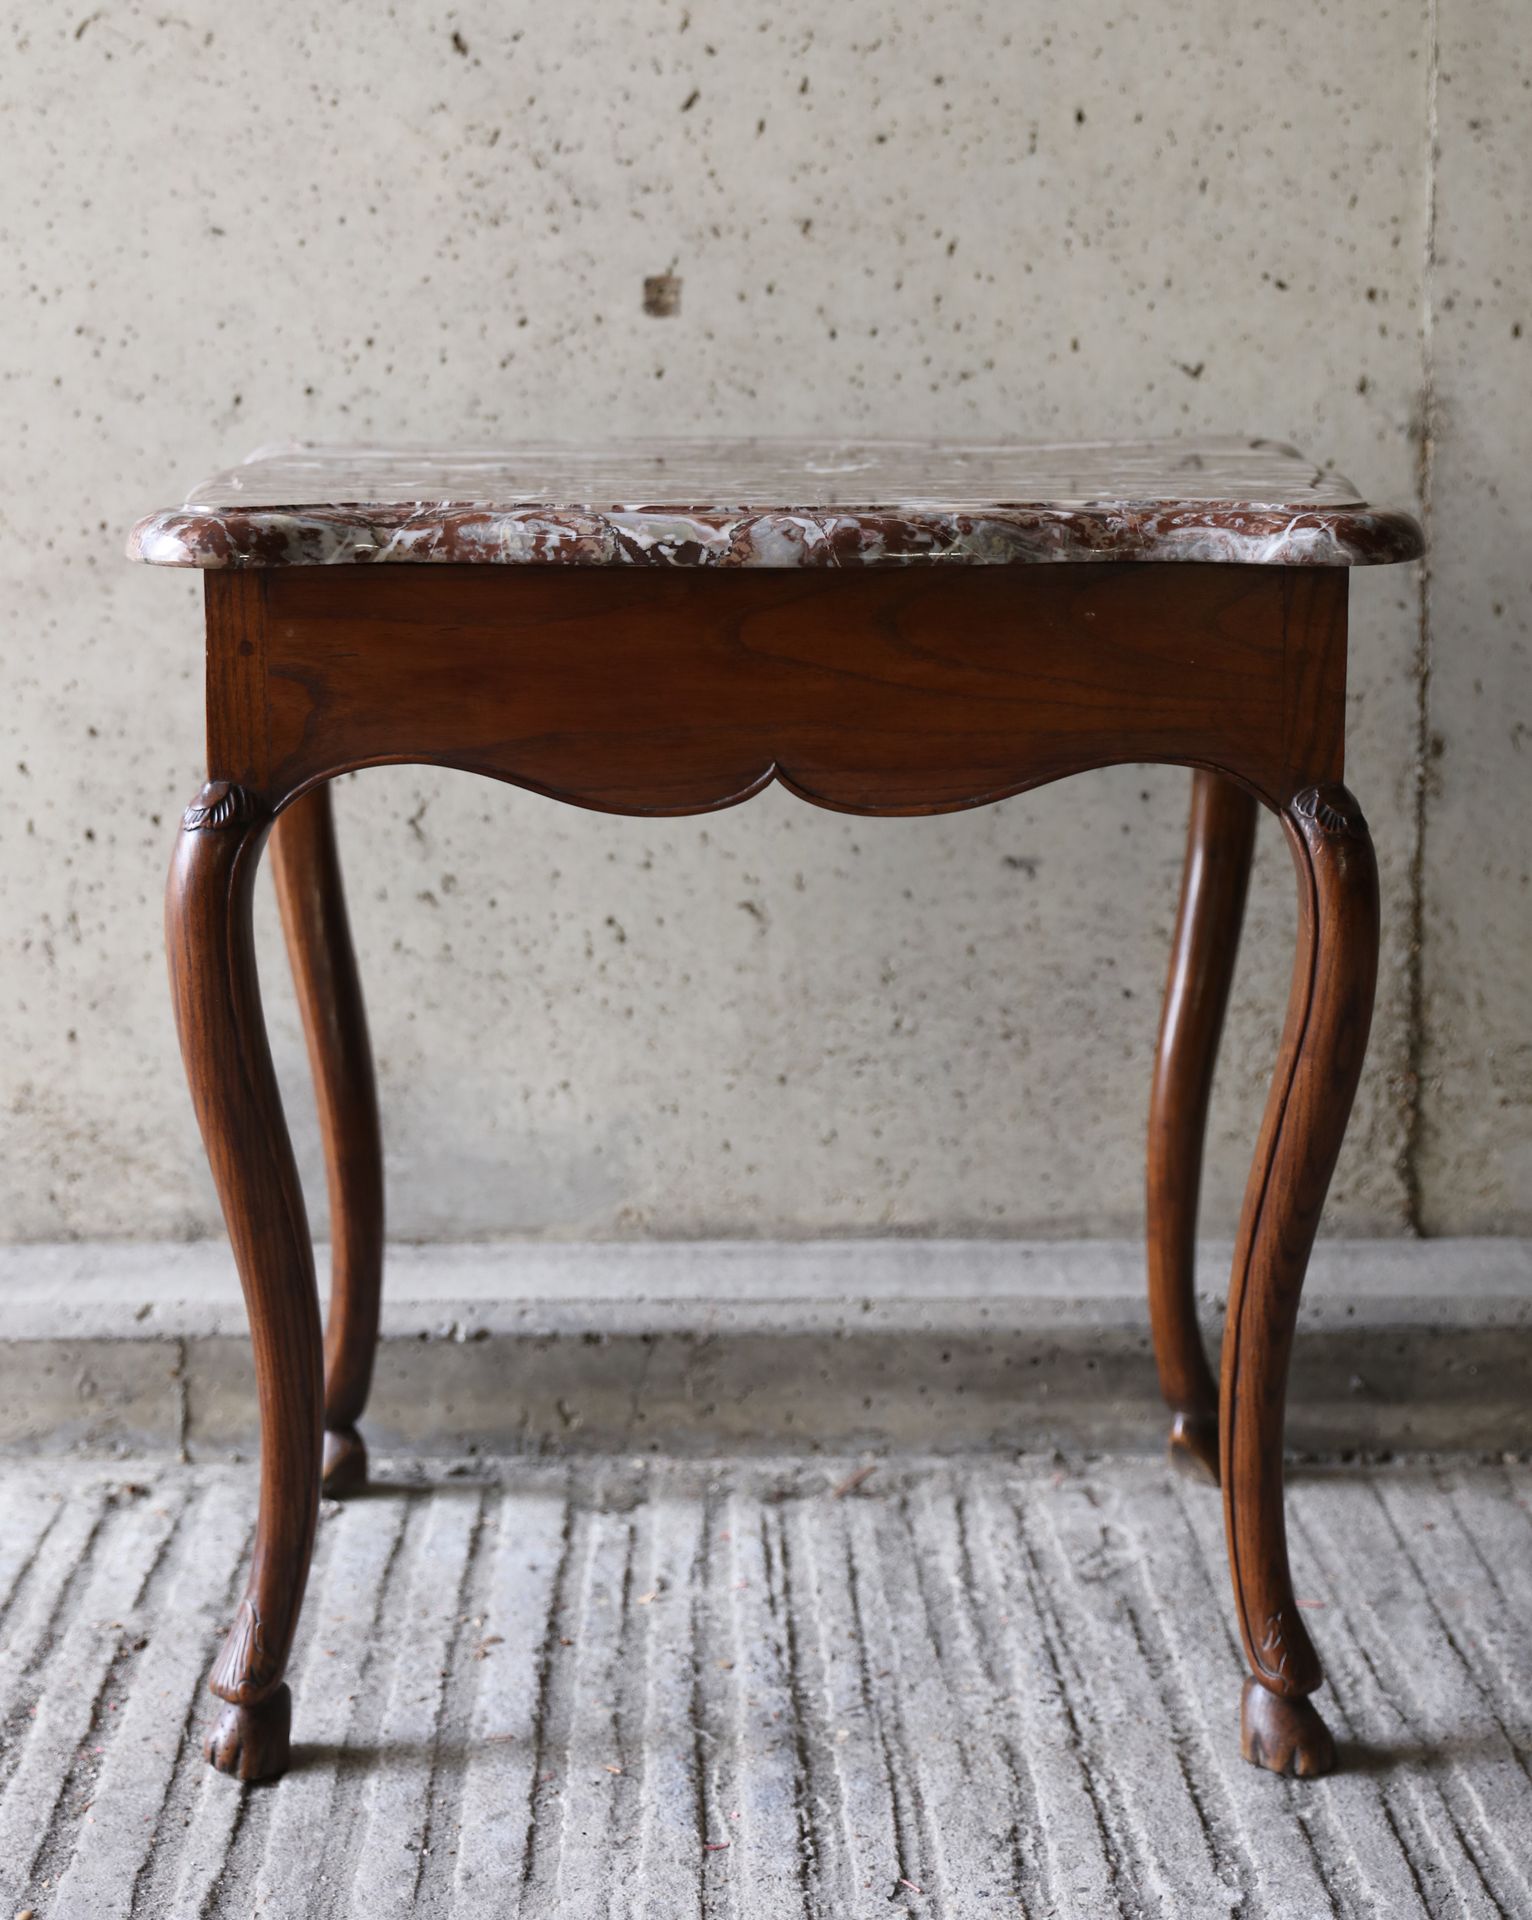 VARIA 1887-1972 带大理石桌面的路易十六小桌
Louis XVI tafeltje met marmeren blad
 72 x 70 x 55&hellip;